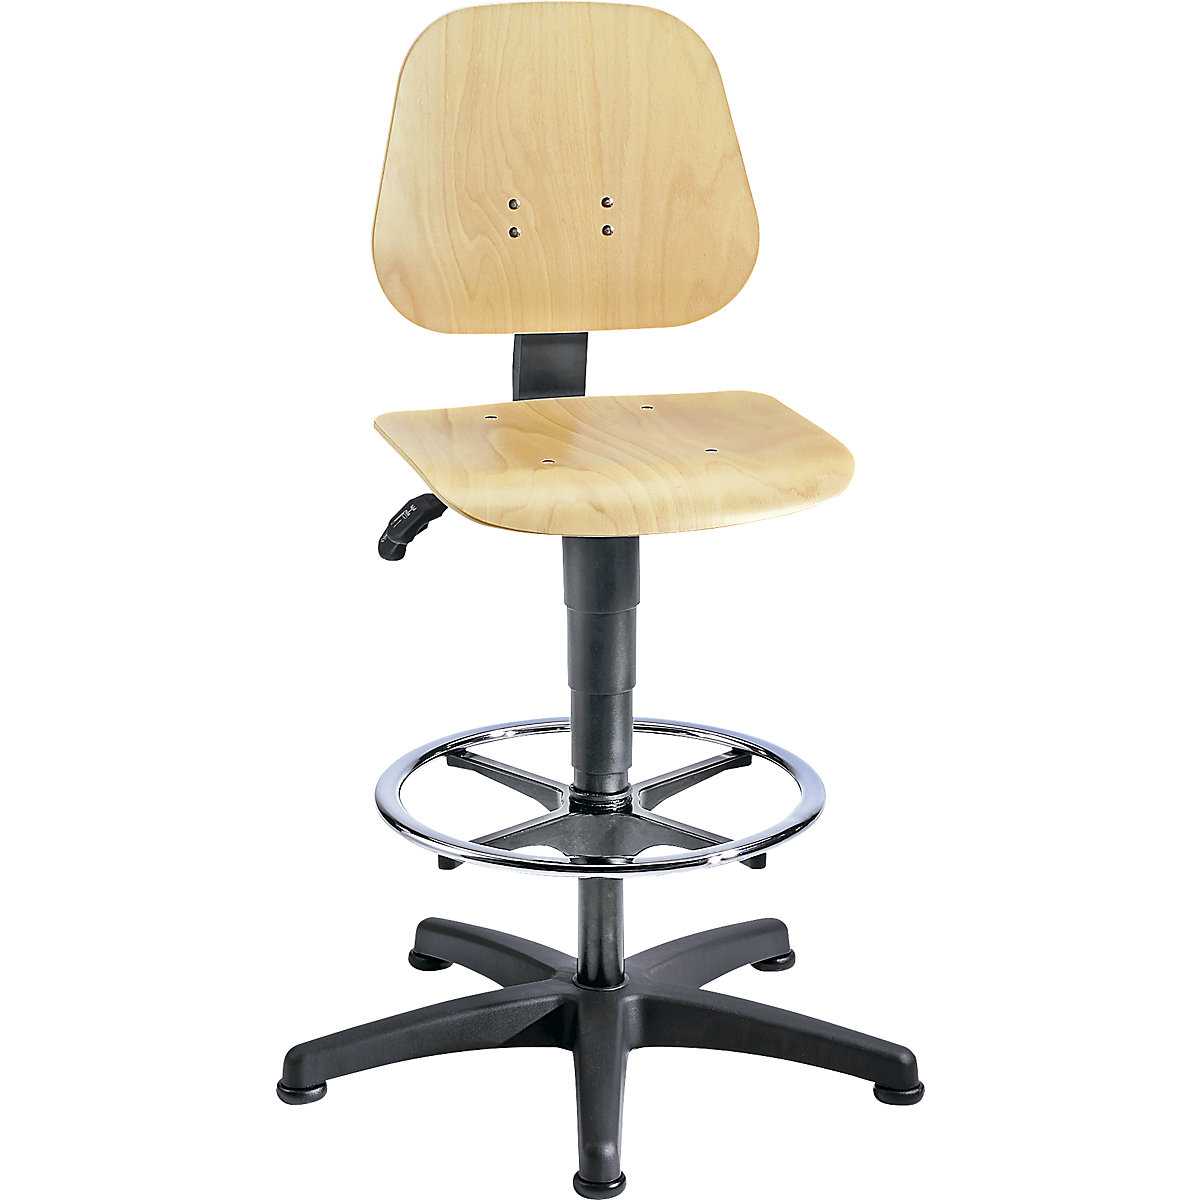 Pracovní otočná židle – bimos, s přestavováním výšky plynovým pístem, bukové vrstvené dřevo, s podlahovými patkami a nožním kruhem-6